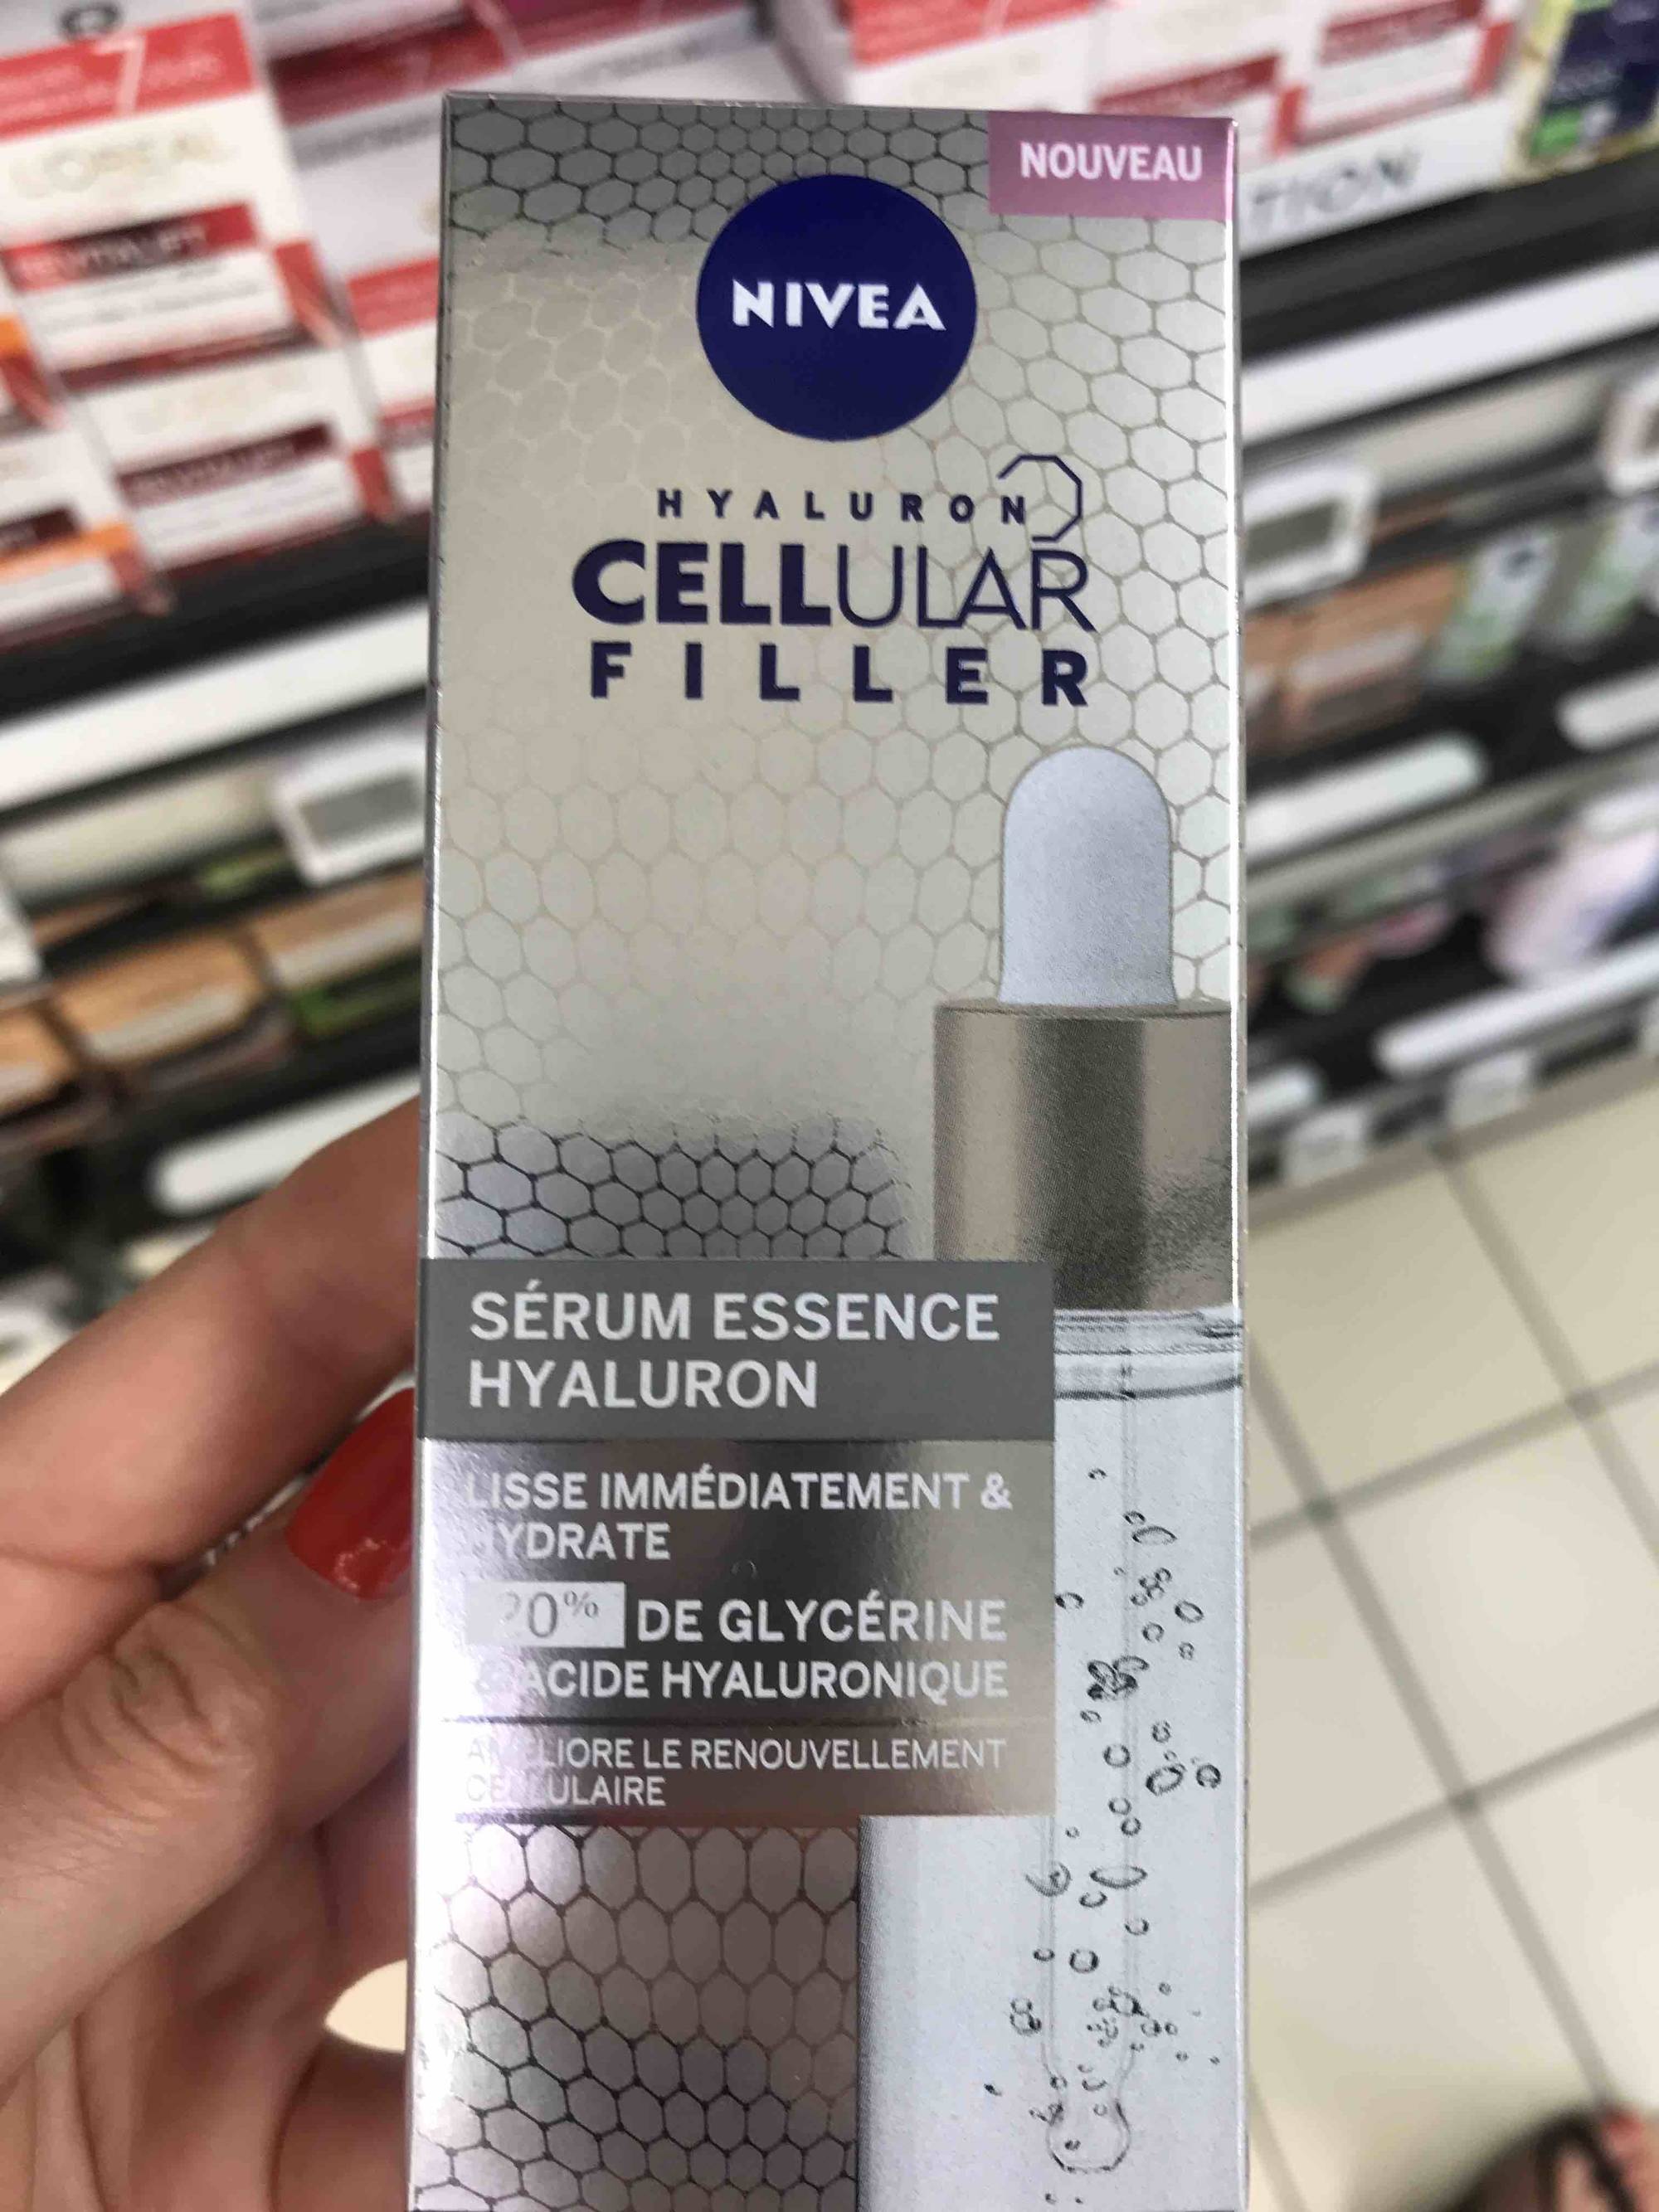 NIVEA - Cellular filler - Sérum essence hyaluron